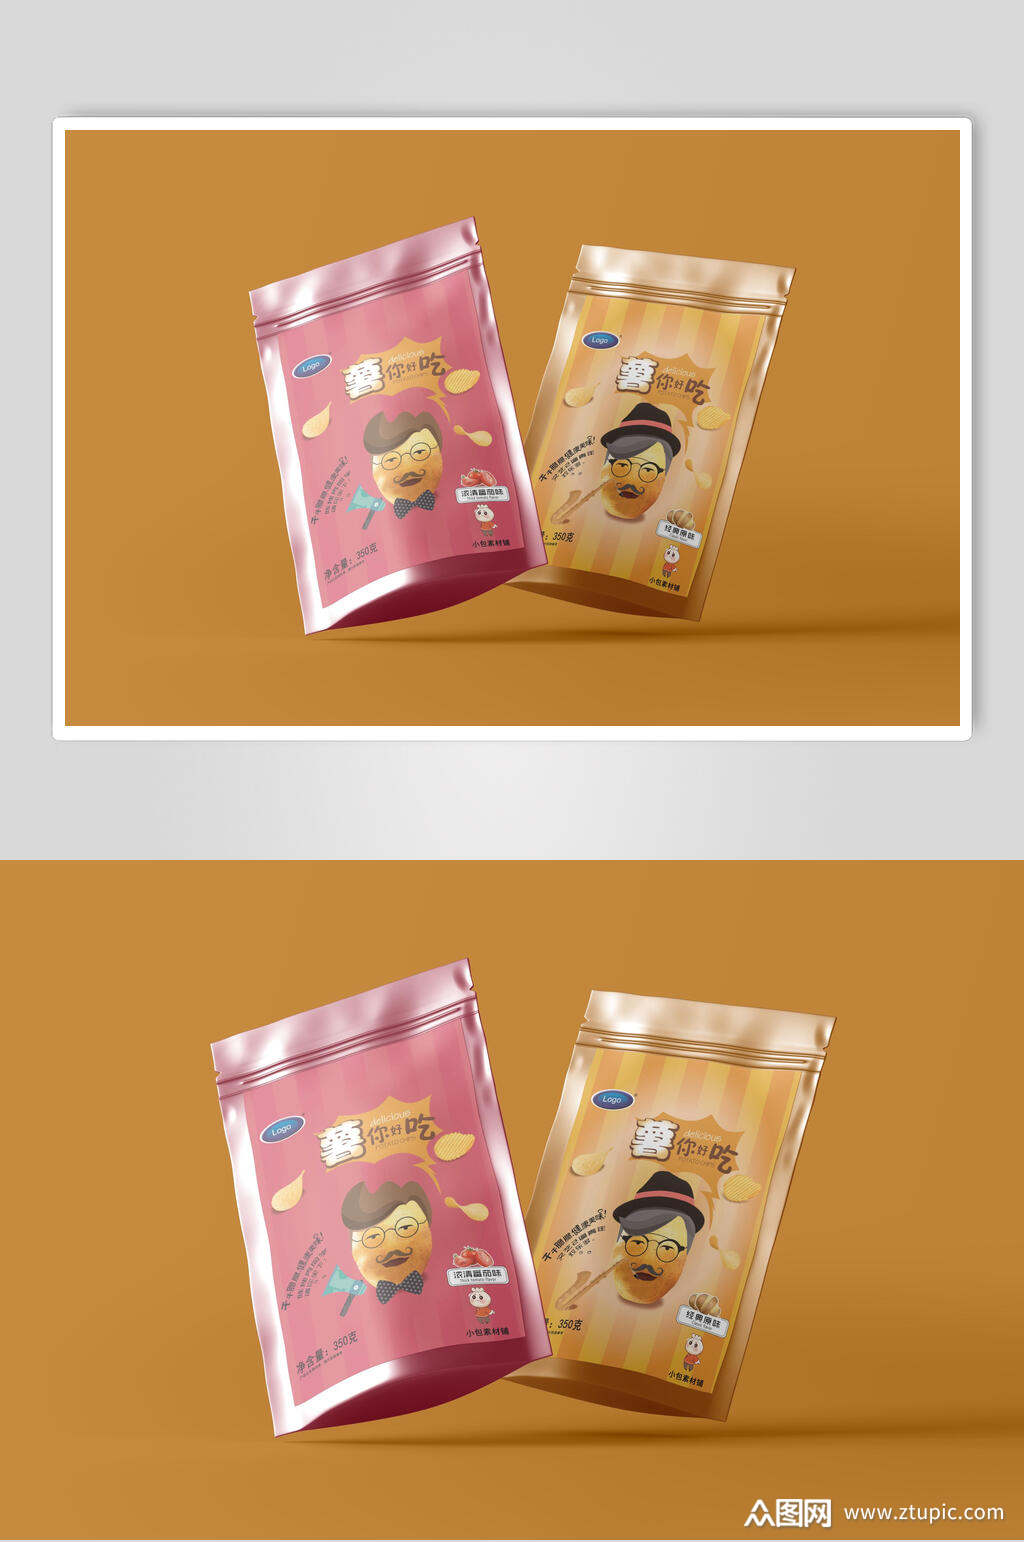 黄色红色薯片食品零食包装袋效果图设计